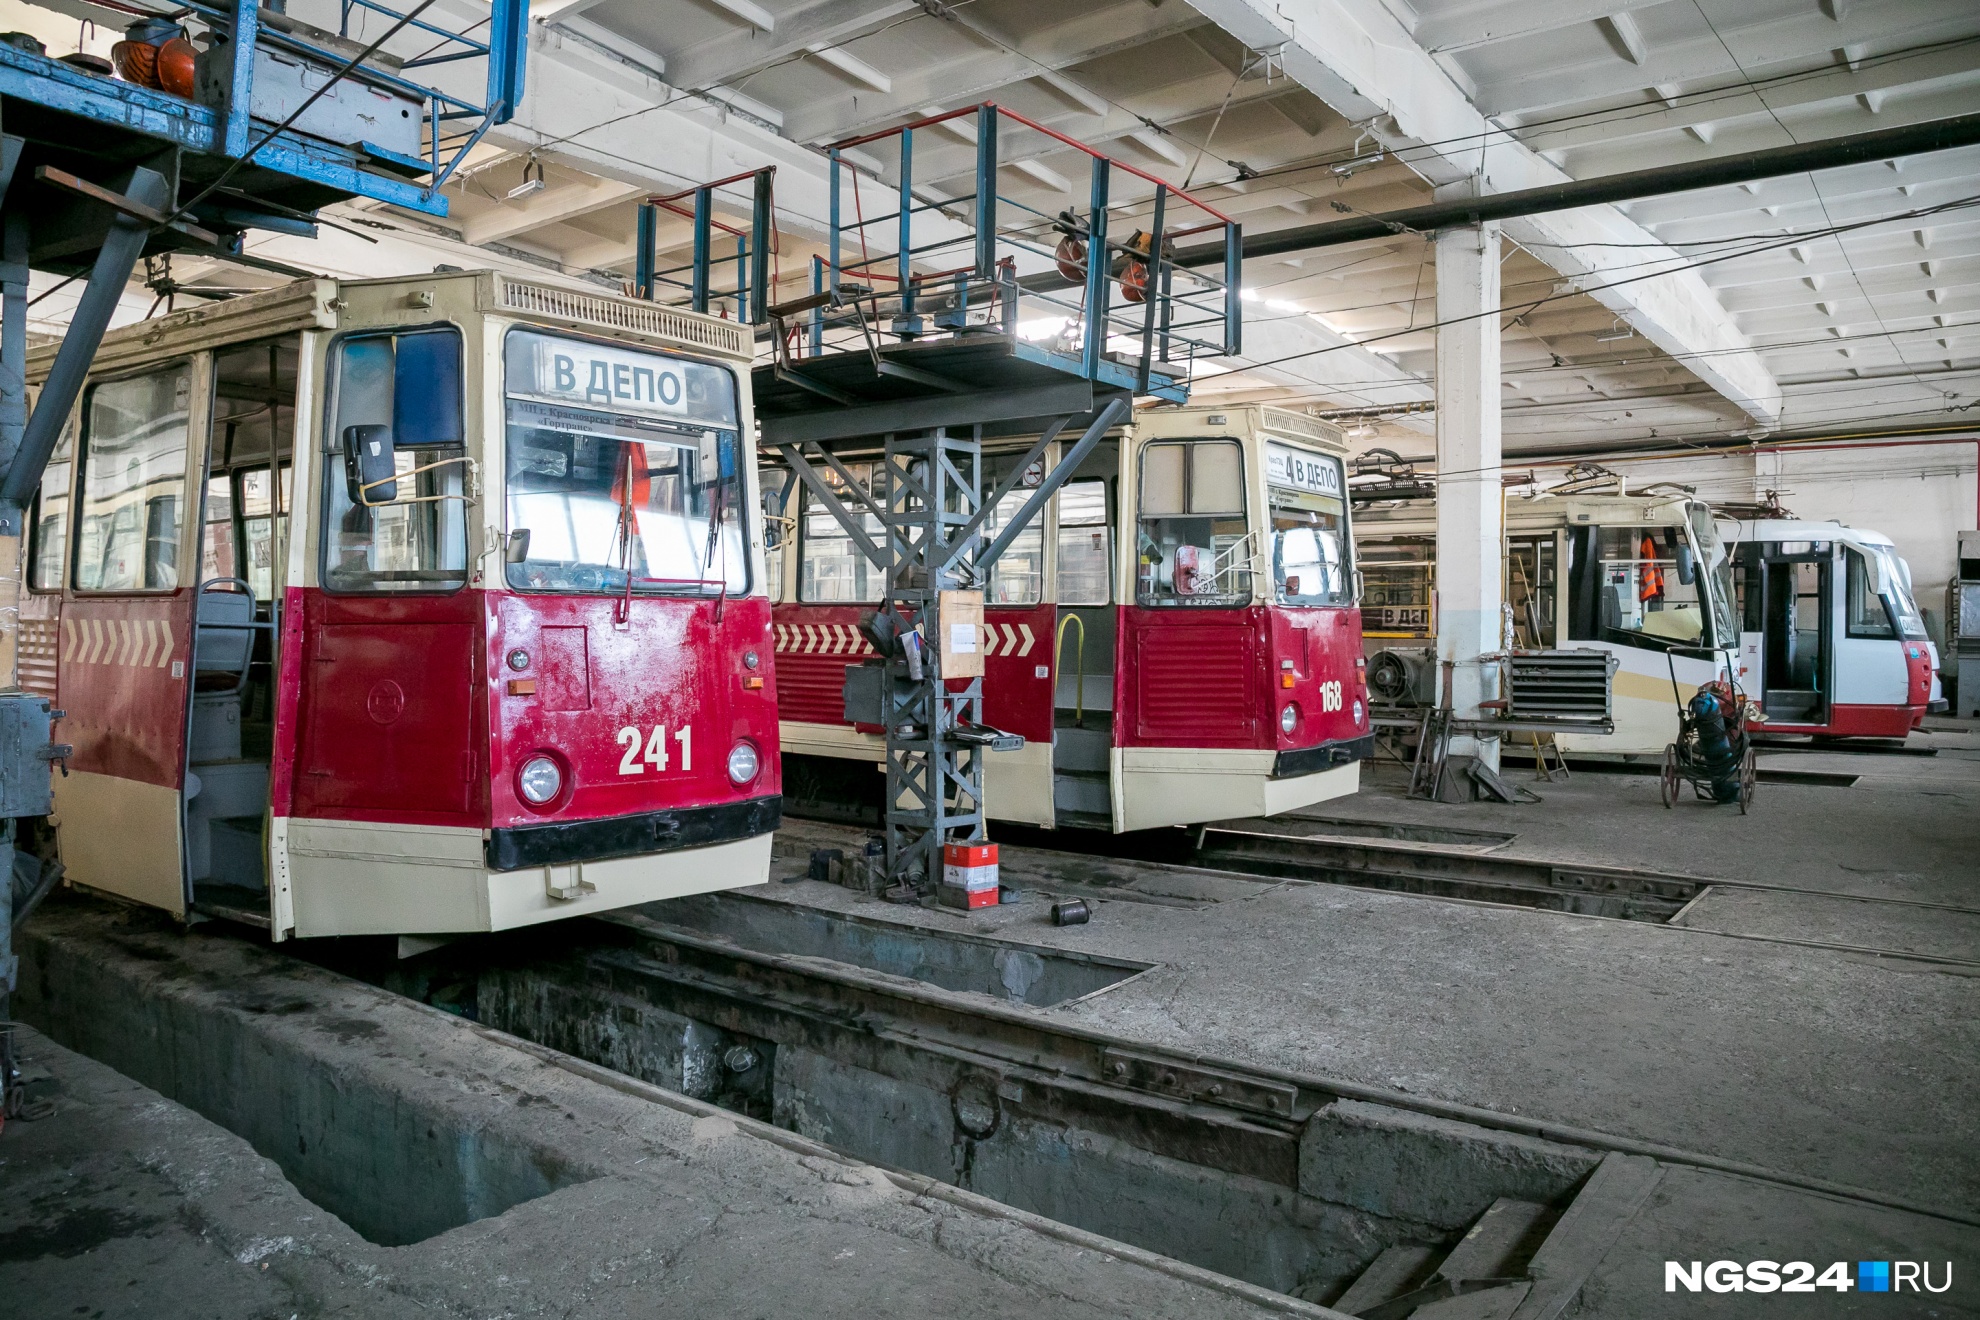 25 новых трамваев намерены закупить в Красноярске